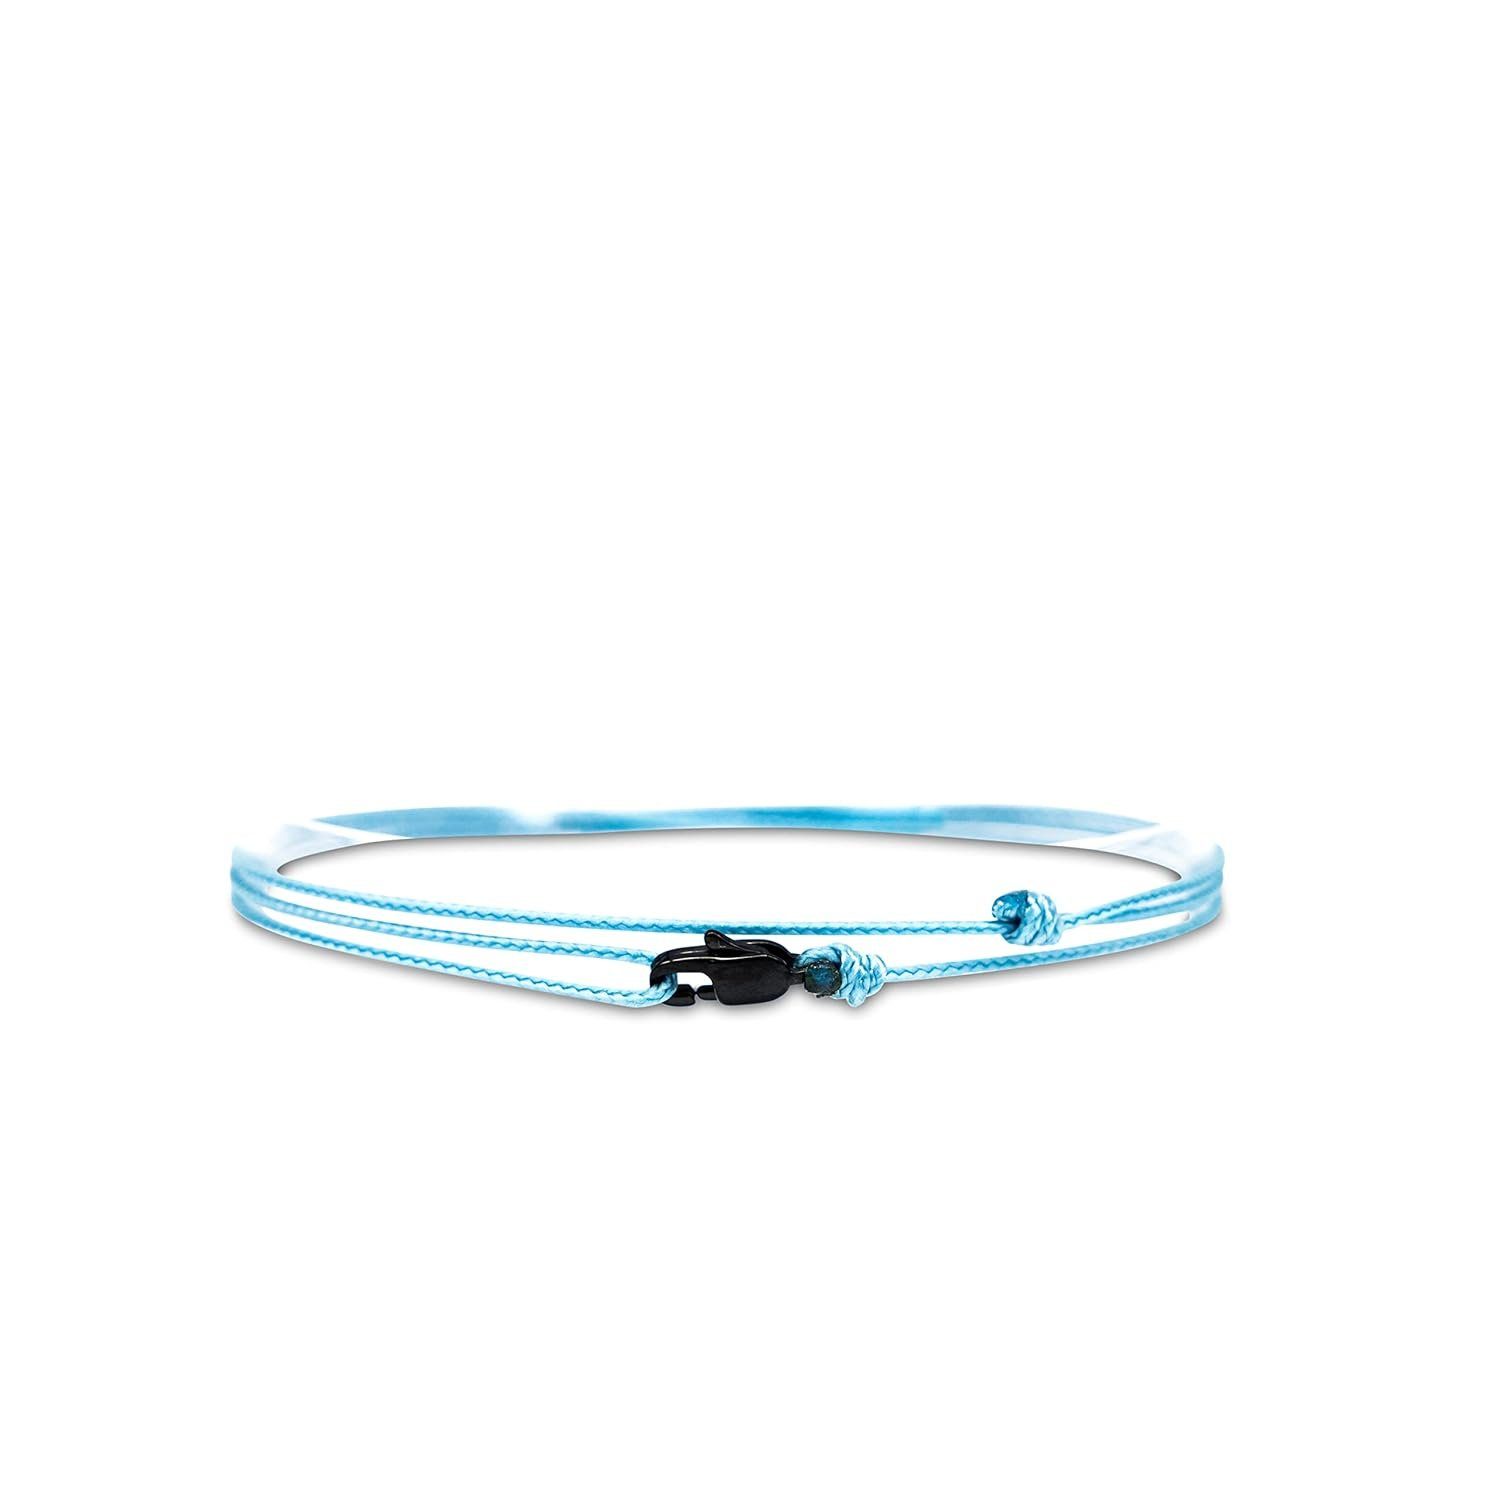 Made by Nami Wickelarmband Minimalistisches Armband mit Karabinerhaken Herren Armband Damen, Maritimes Armband Wasserfest & Verstellbar